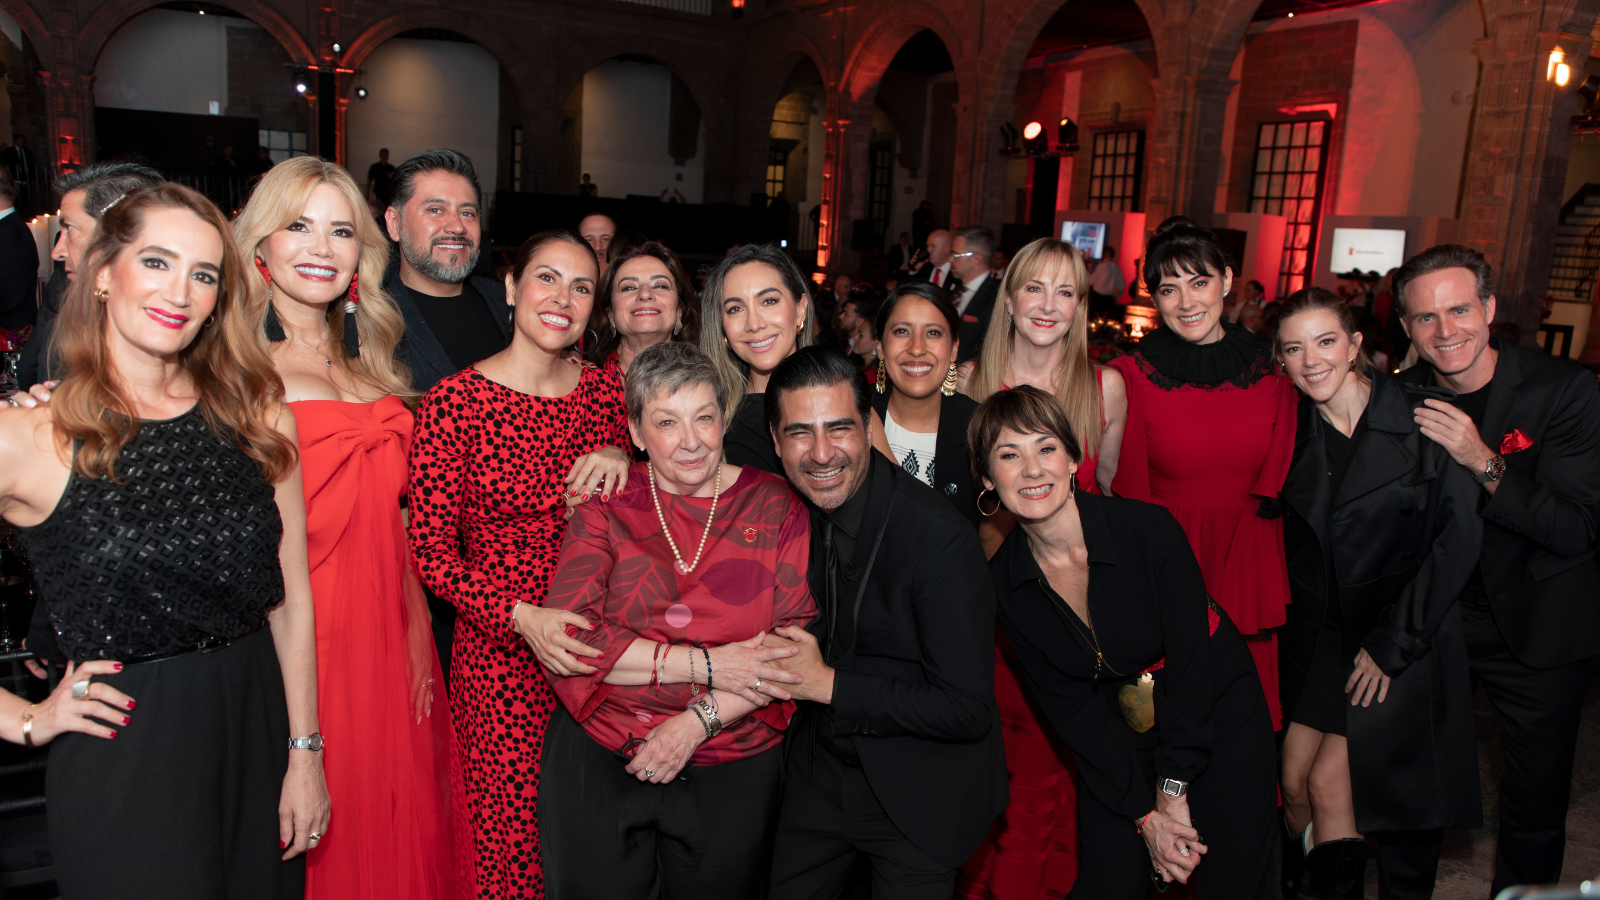 Cena en Rojo: 50 años de trabajo en equipo por la niñez